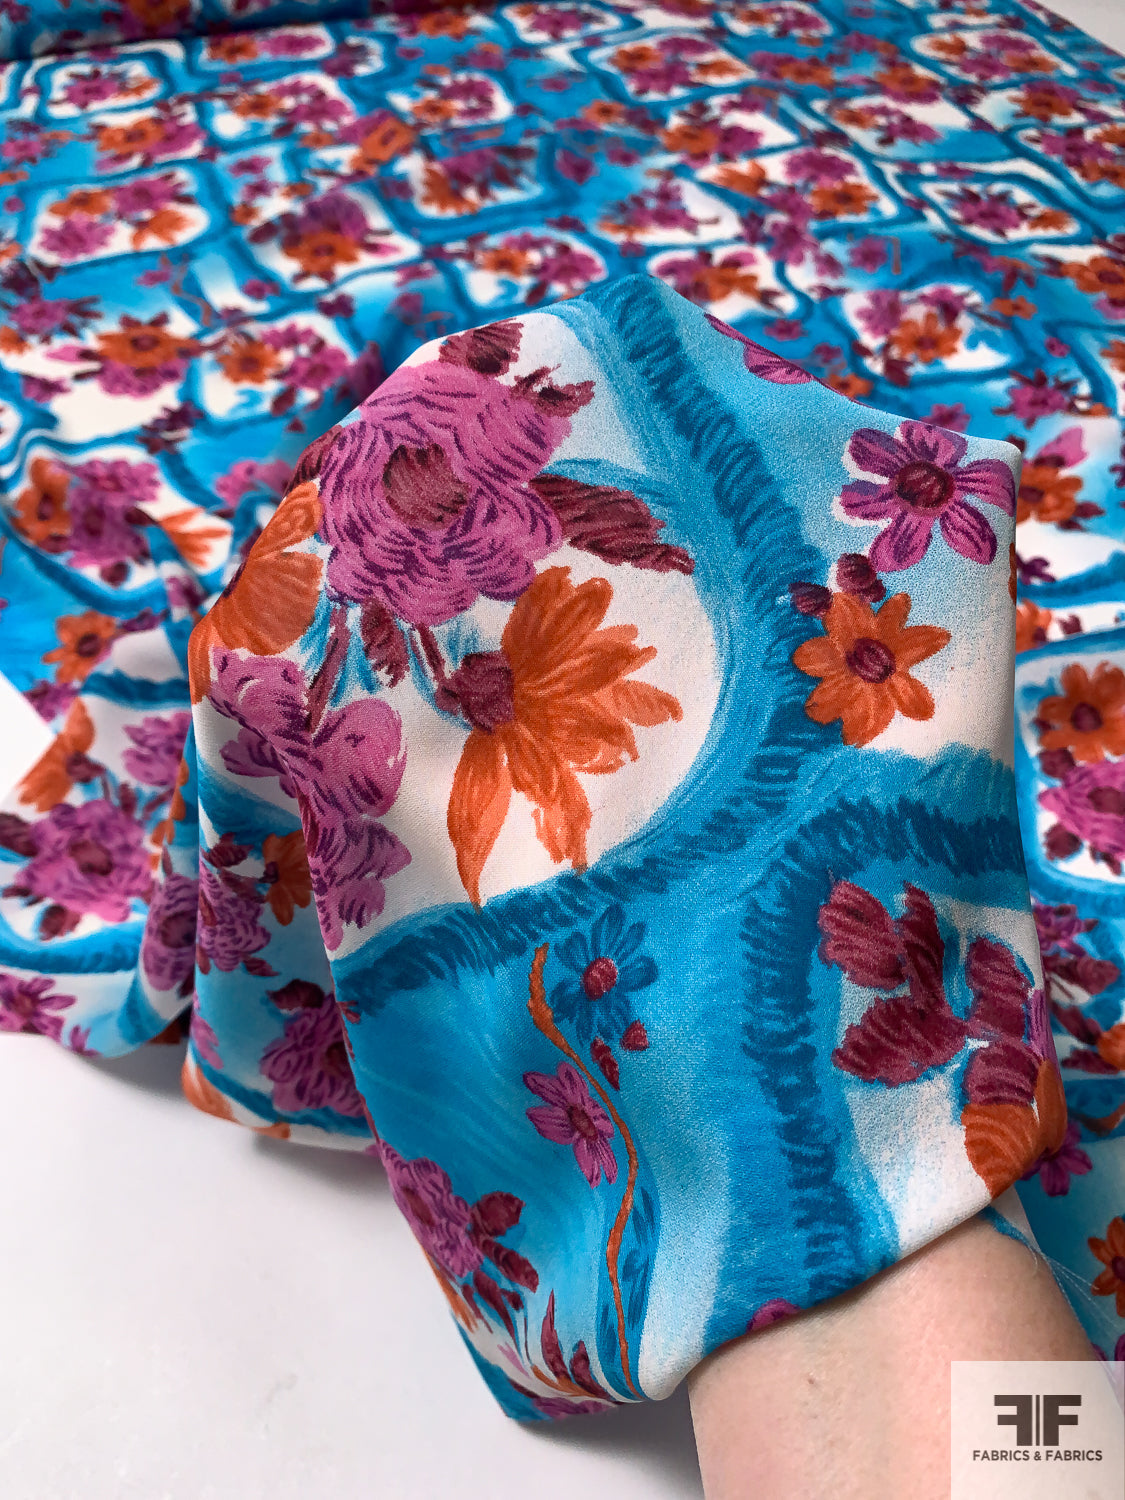 Floral Boxes Printed Silk Georgette - Ocean Blue / Berry Pink / Burnt Orange